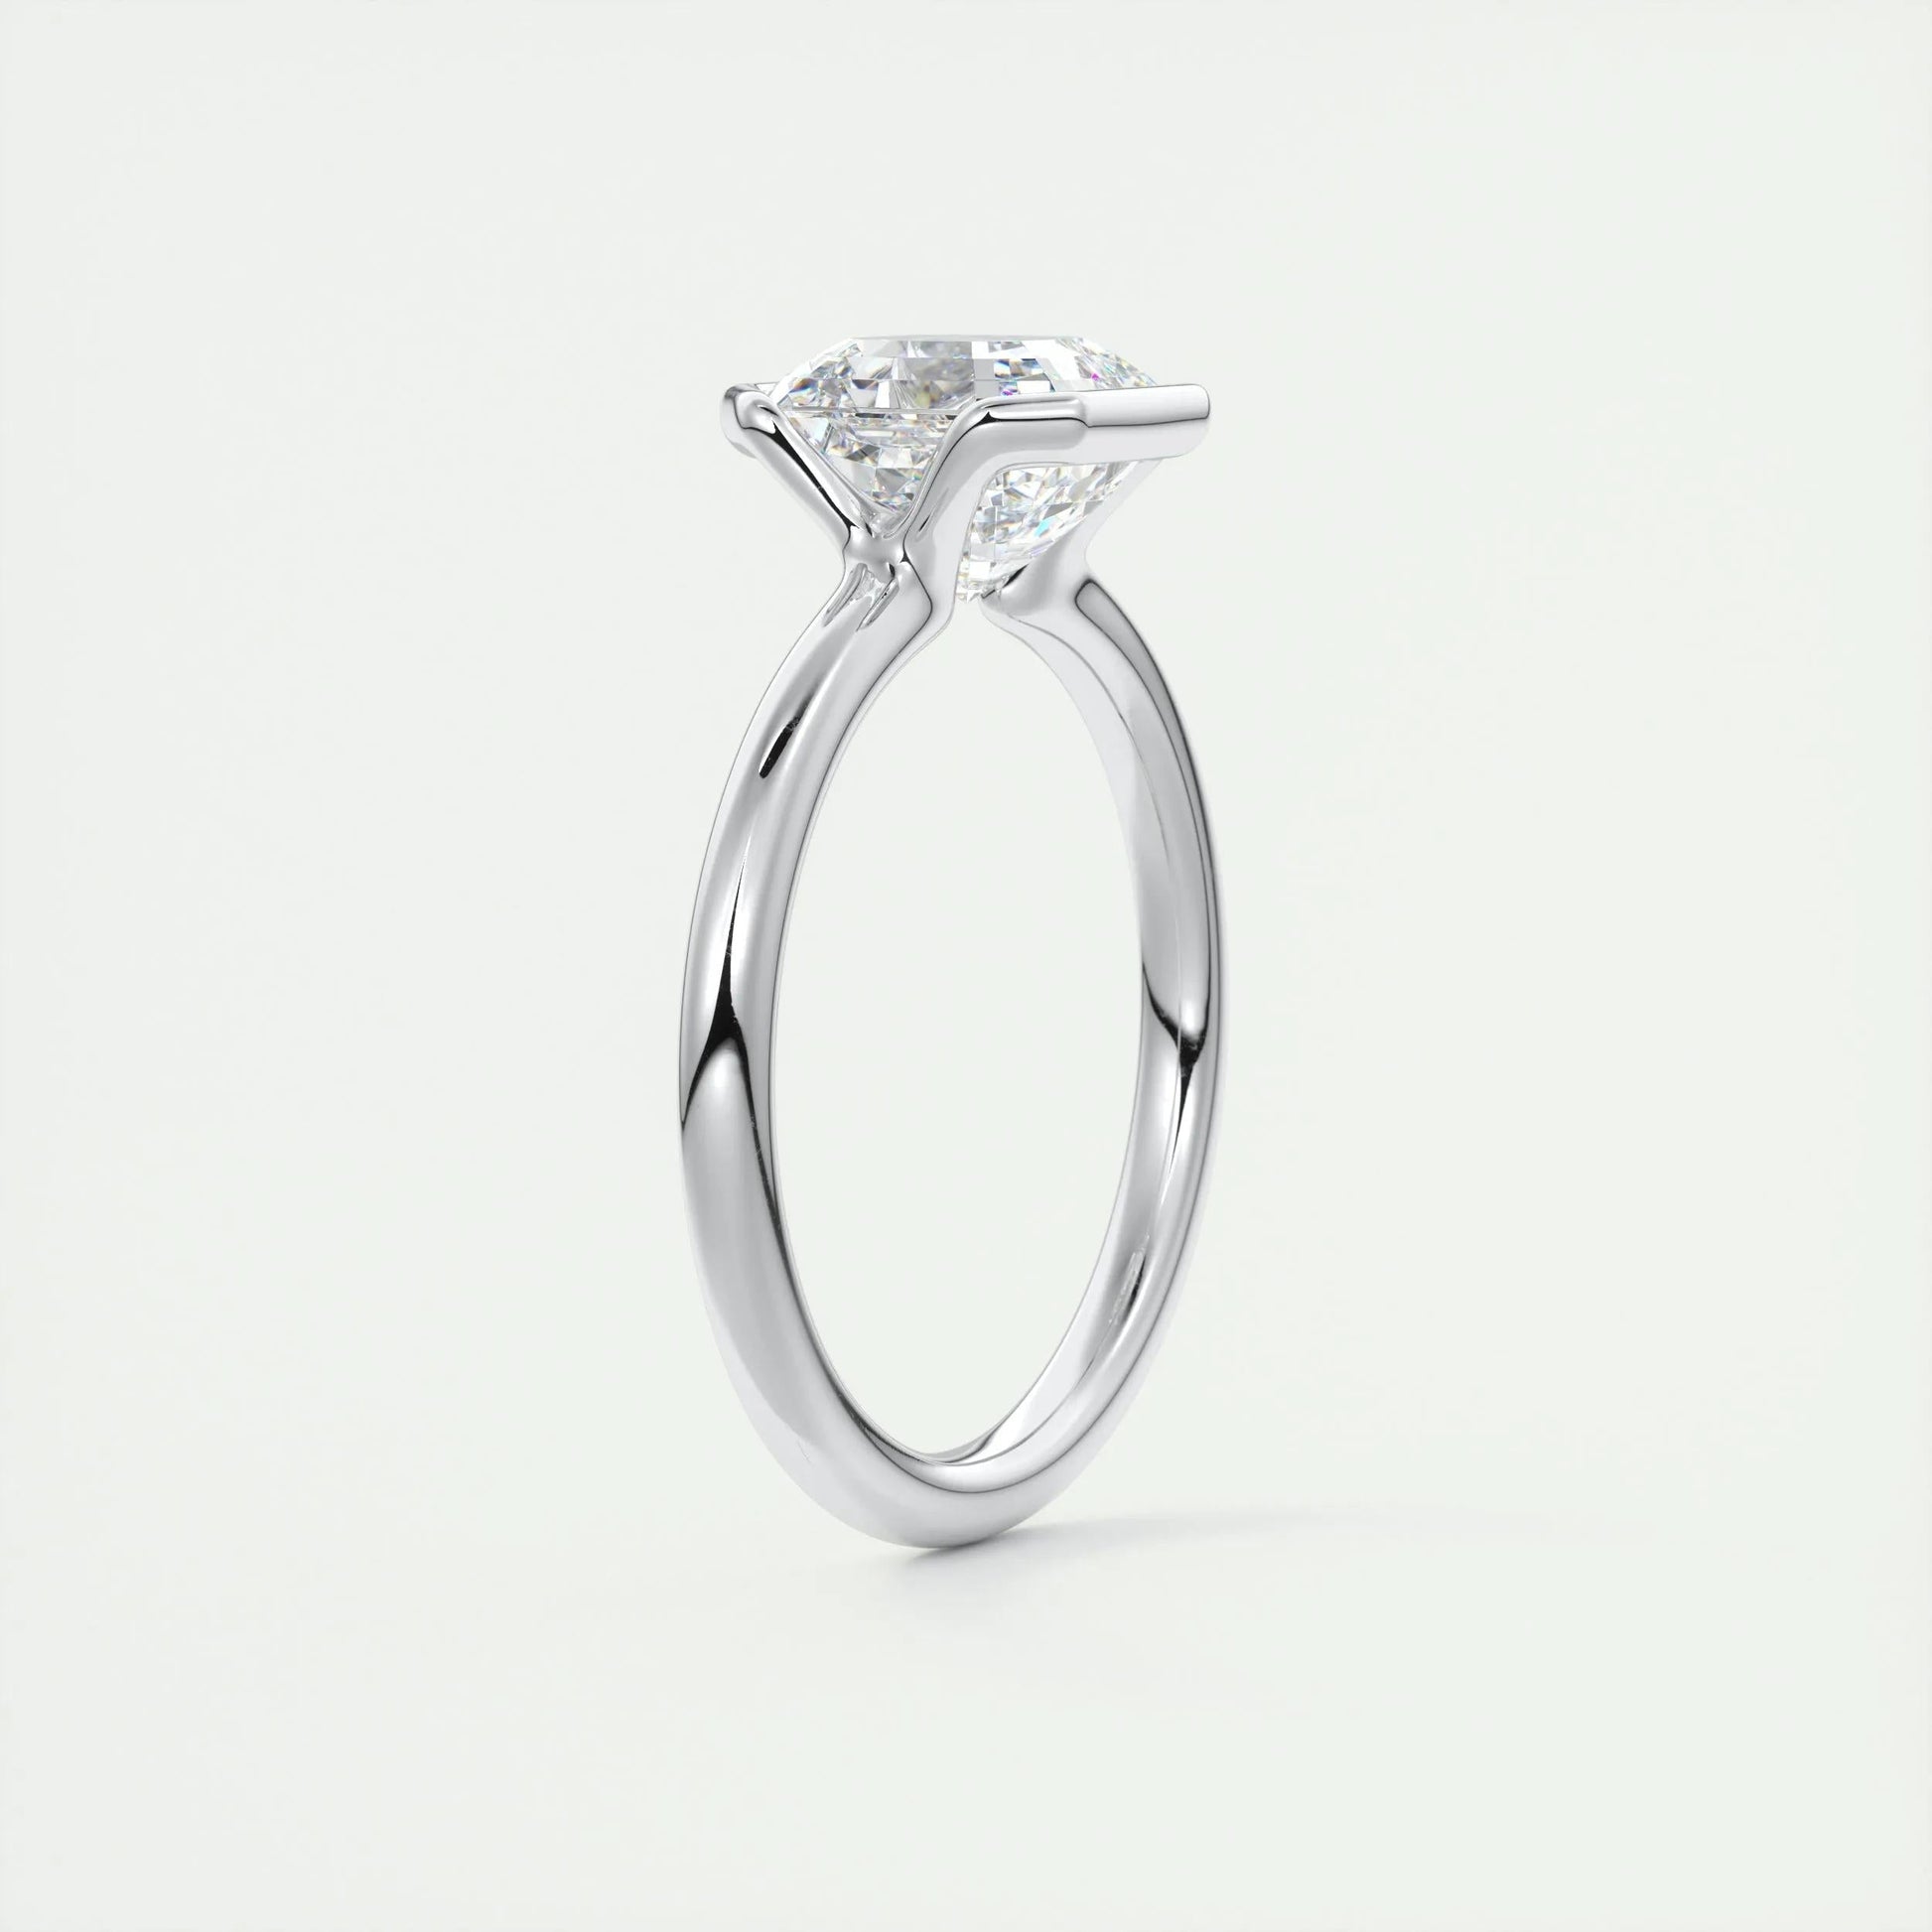 2 CT Asscher Half Bezel CVD F/VS1 Diamond Engagement Ring 7